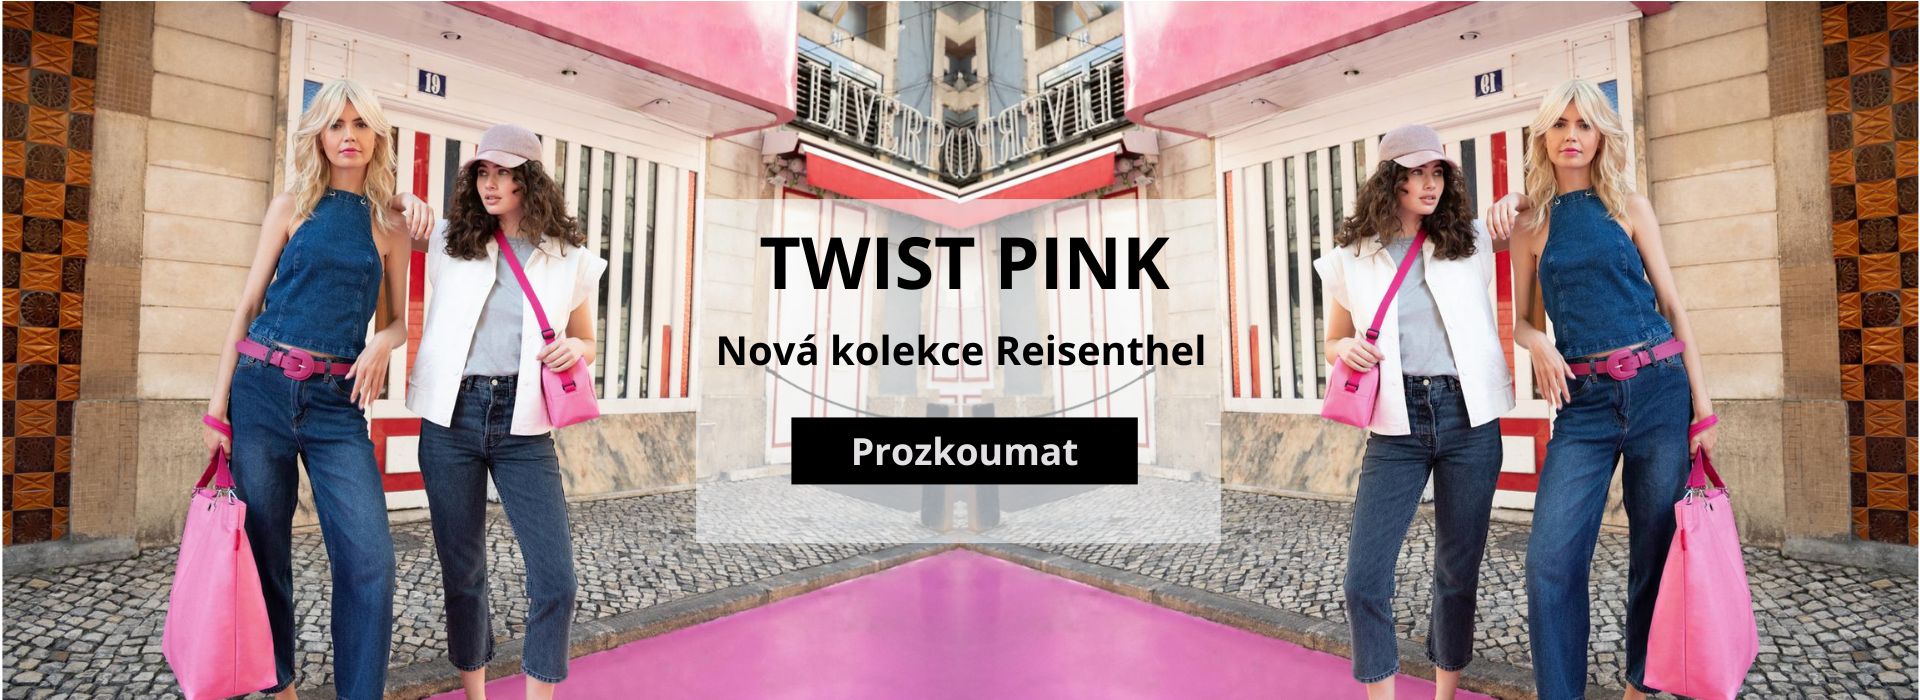 Nová kolekce Twist pink